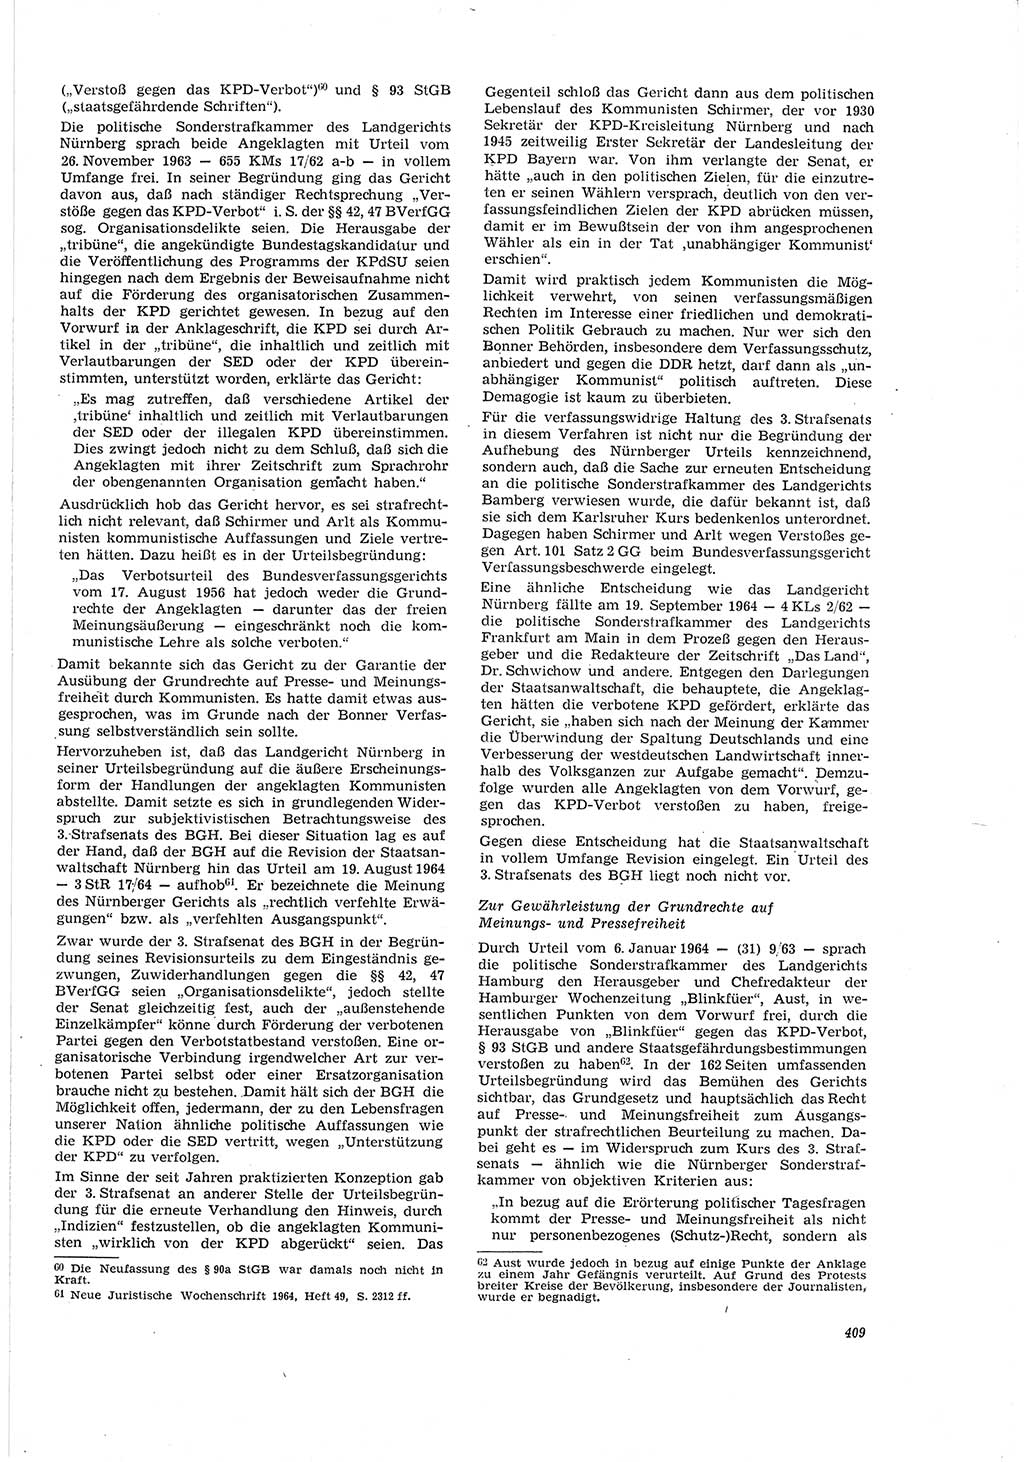 Neue Justiz (NJ), Zeitschrift für Recht und Rechtswissenschaft [Deutsche Demokratische Republik (DDR)], 20. Jahrgang 1966, Seite 409 (NJ DDR 1966, S. 409)